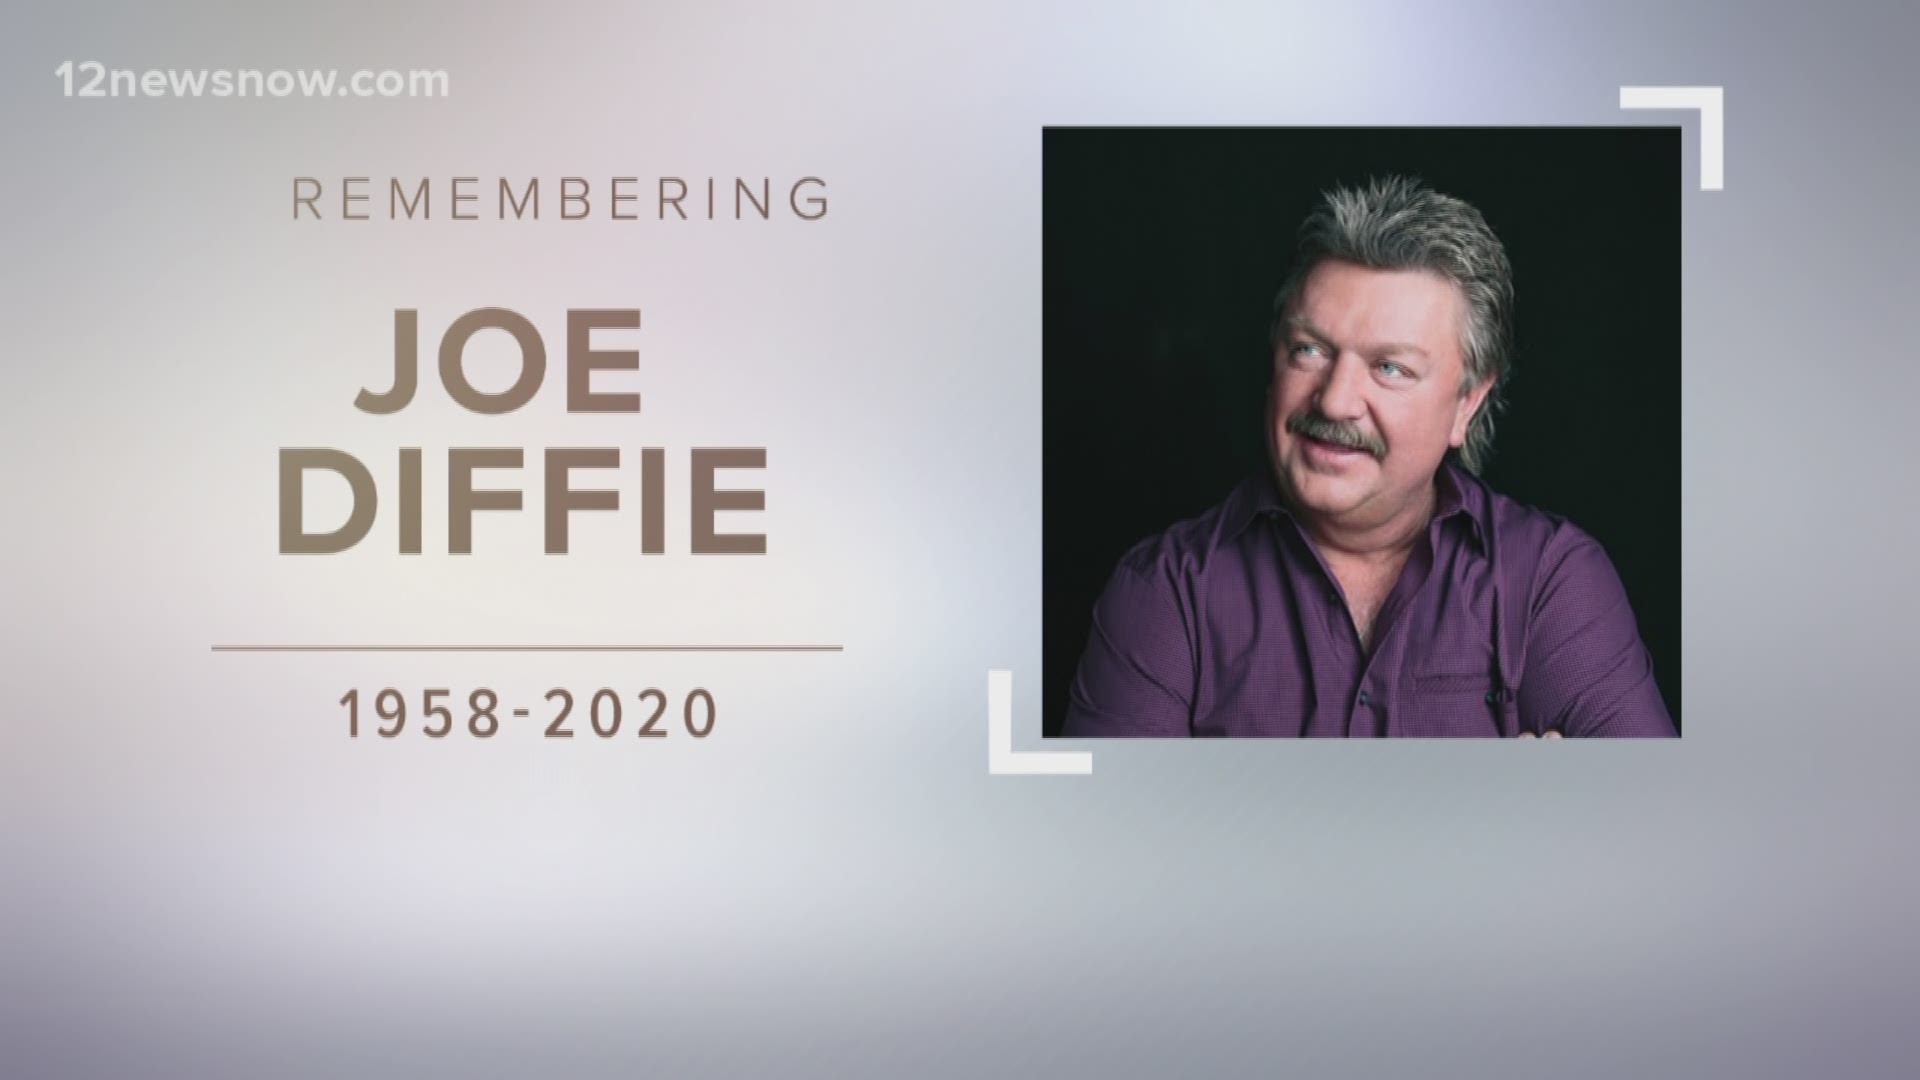 Diffie was 61